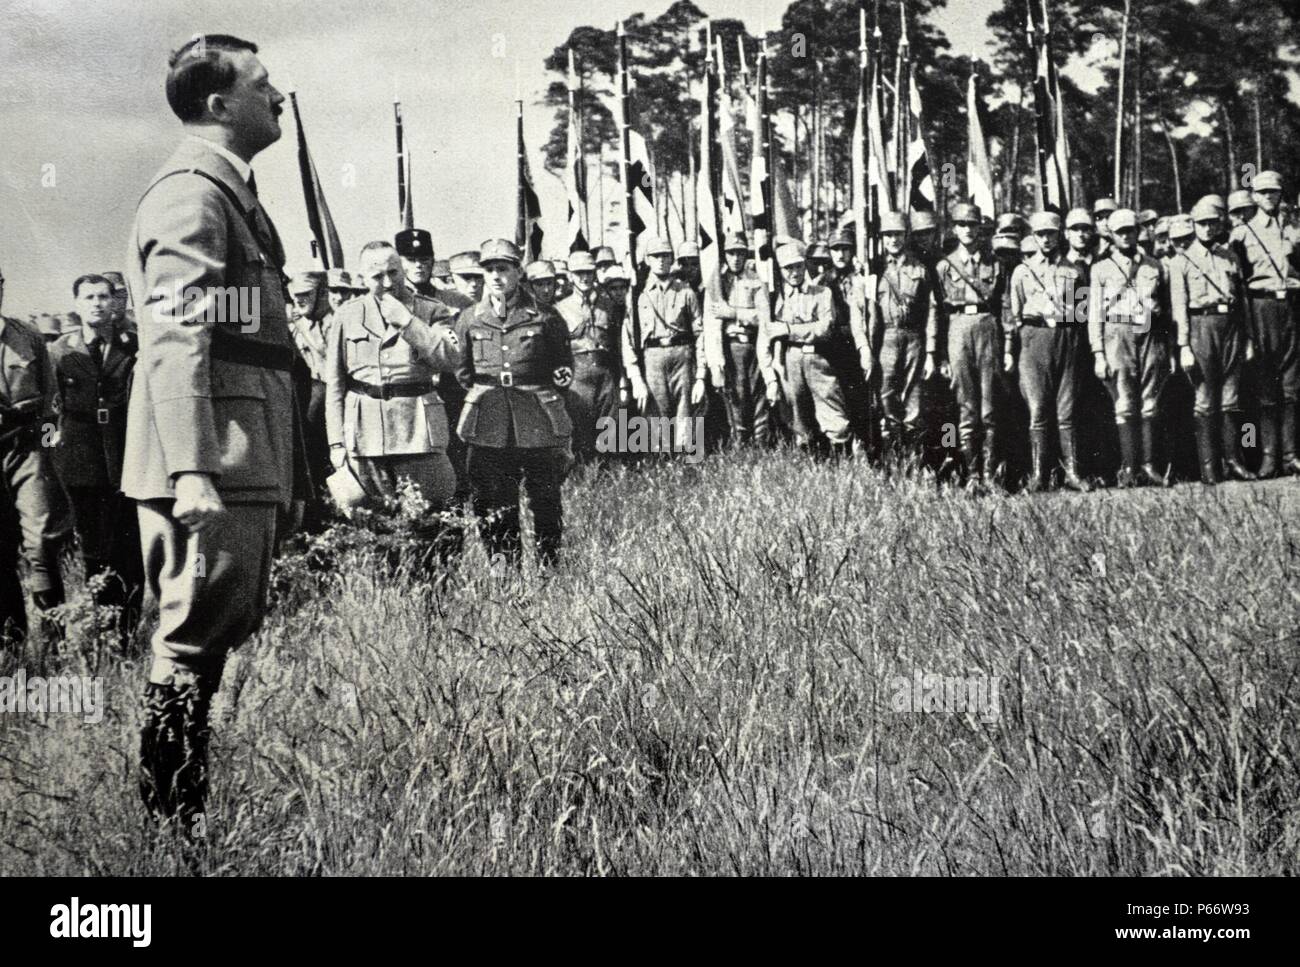 1889 - 1945 Adolf Hitler. adresses un rassemblement de recrues nazies à Bernau. Homme politique allemand et le chef du parti nazi. Il a été chancelier de l'Allemagne de 1933 à 1945 et d'un dictateur de l'Allemagne nazie de 1934 à 1945. Banque D'Images